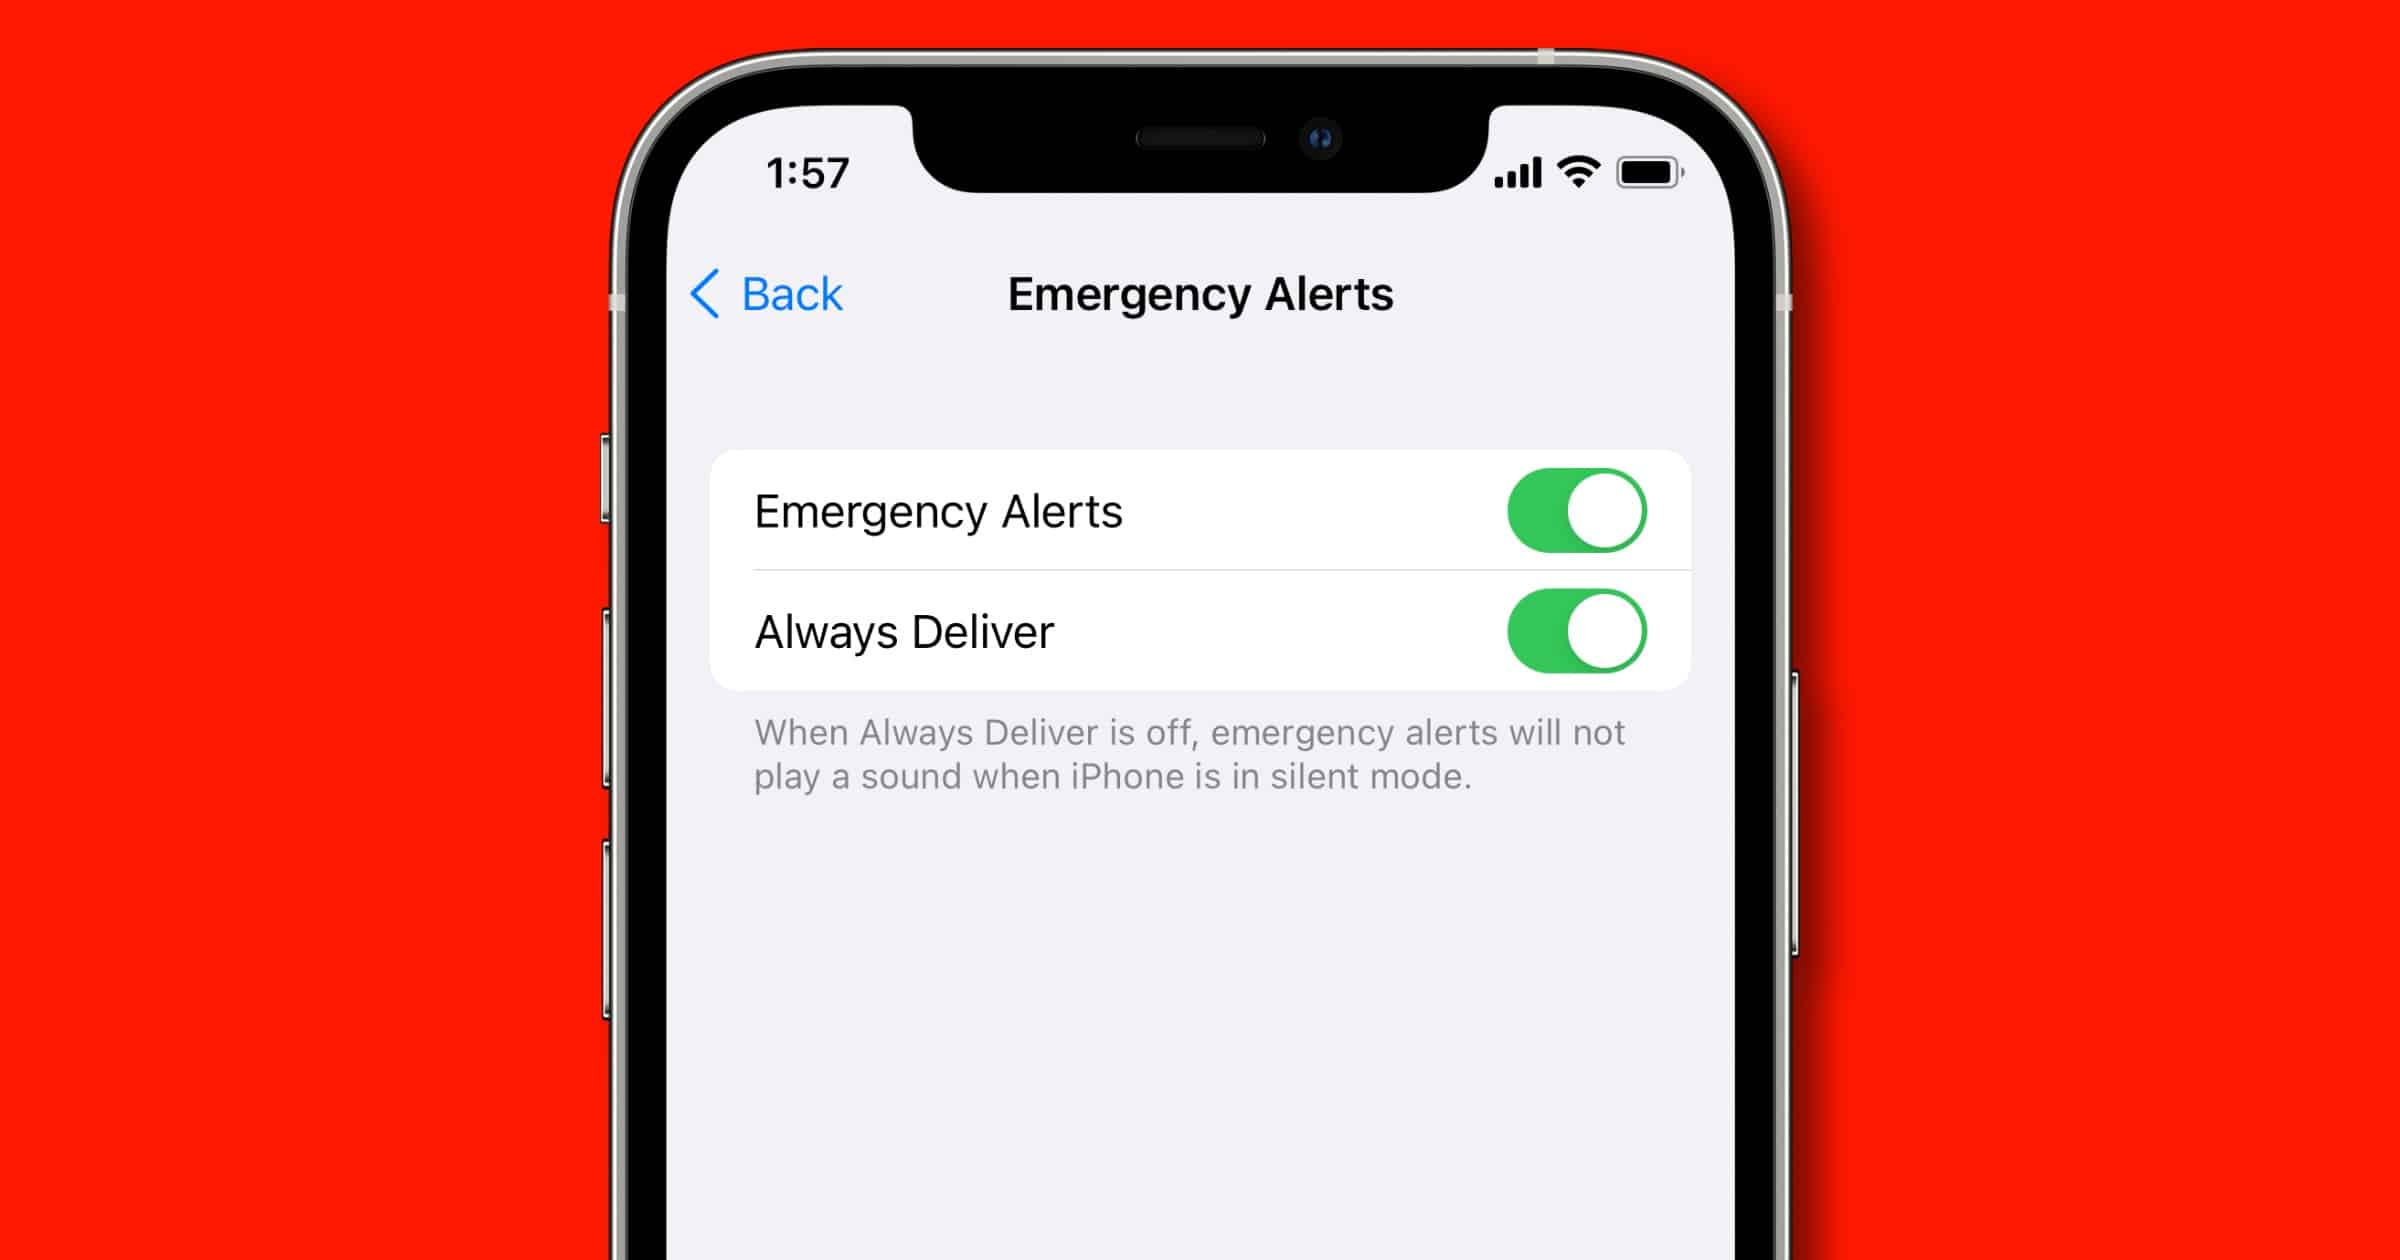 Emergency alerts in iOS settings